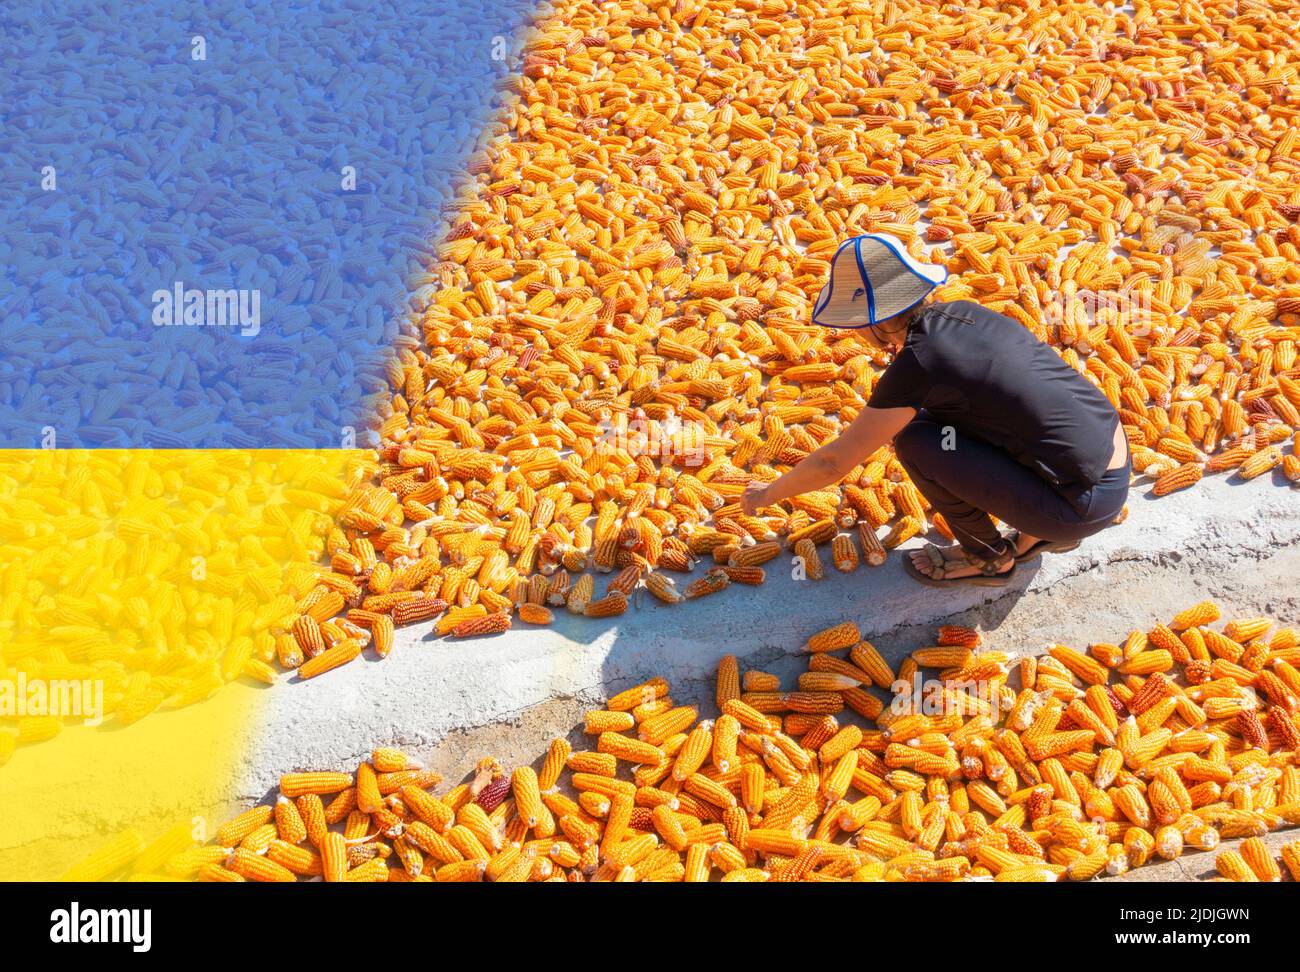 Mujer secando maíz con bandera de Ucrania se superponen. Ucrania Rusia guerra, conflicto, aumento de los precios de los alimentos, escasez de alimentos para el trabajo, sanciones... concepto Foto de stock